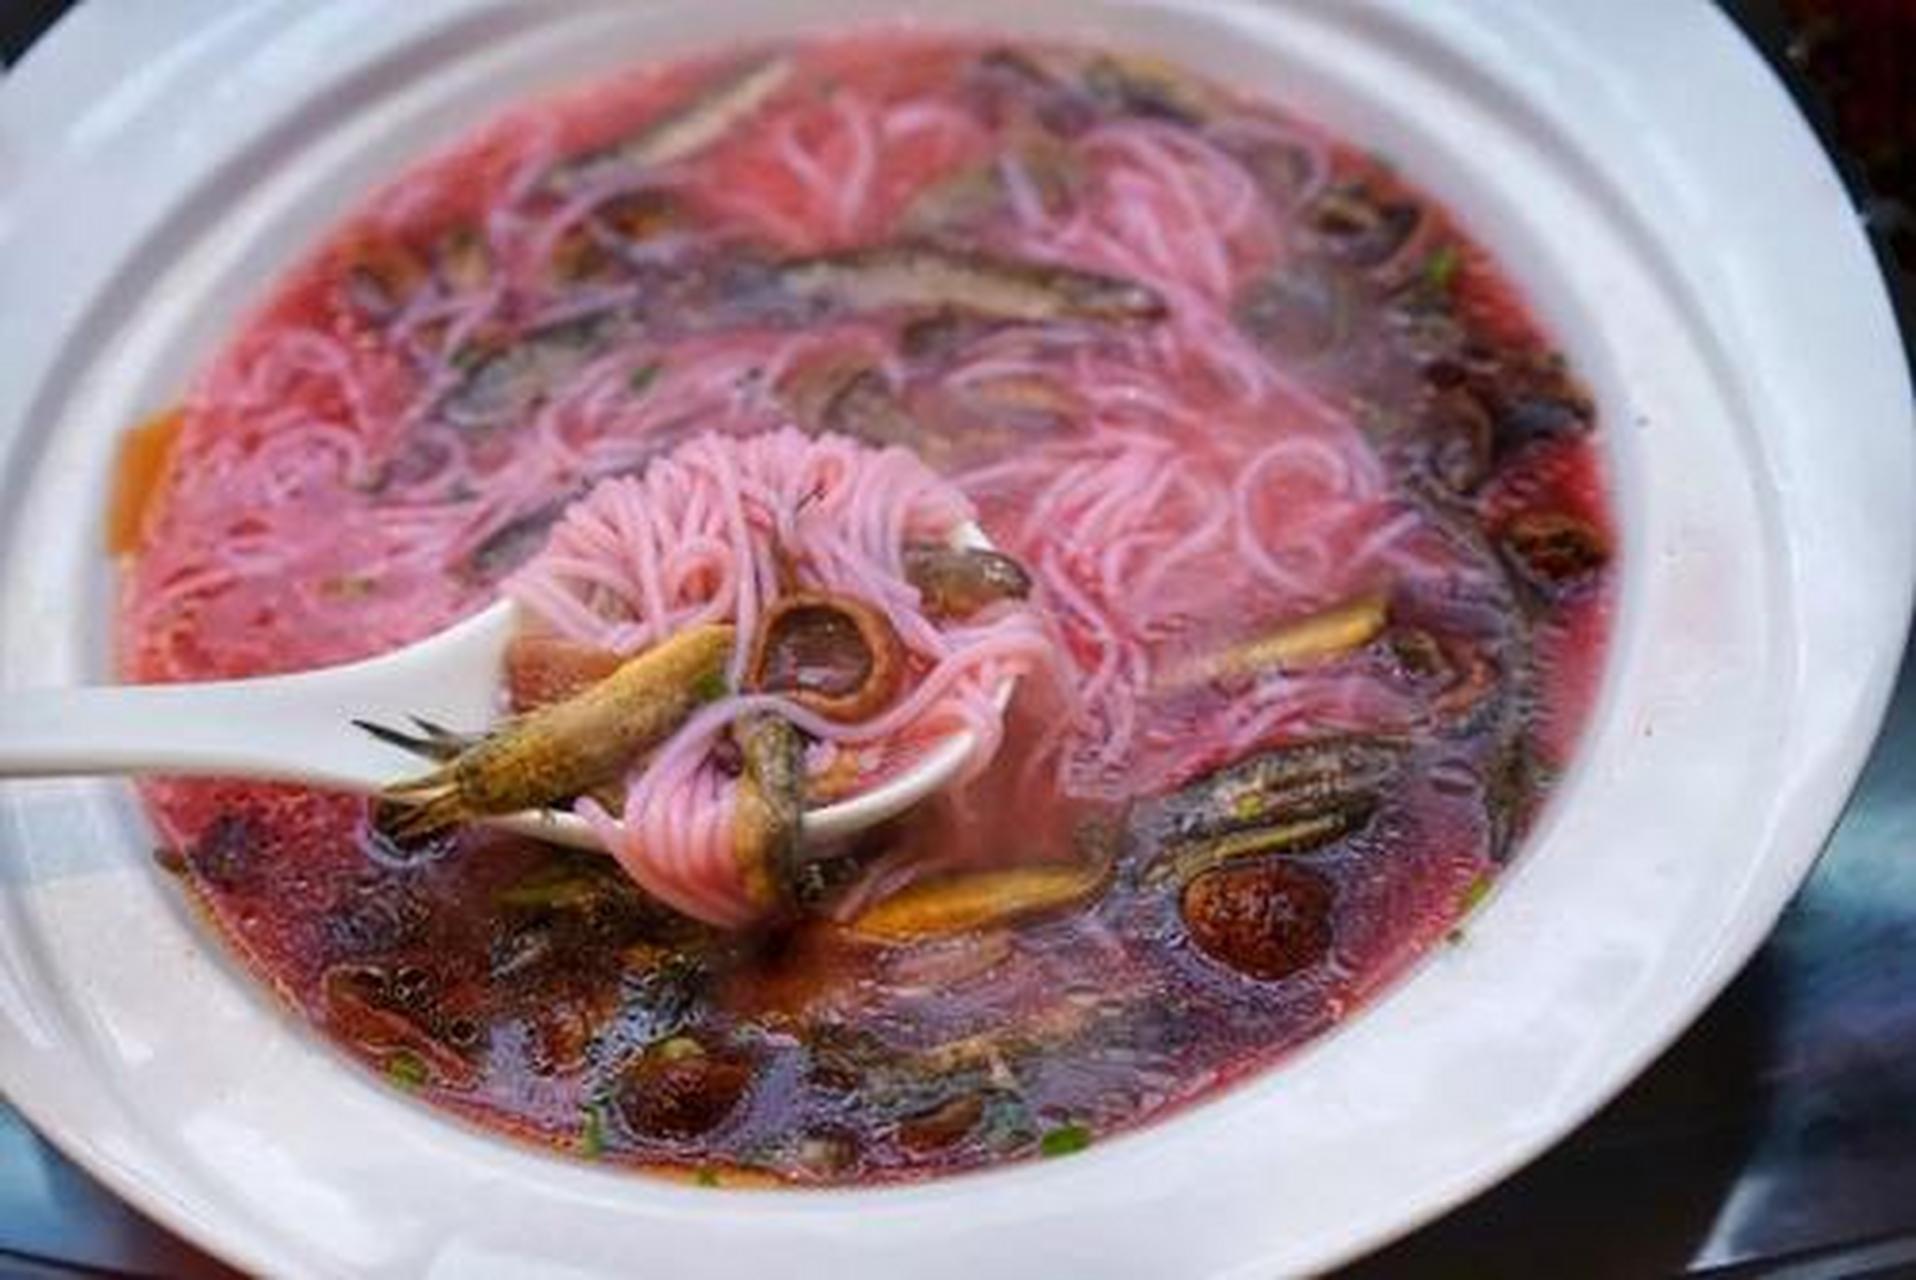 泥鳅粉,是三明的一道特色小吃,以泥鳅煮粉干制成,味道鲜美,营养丰富